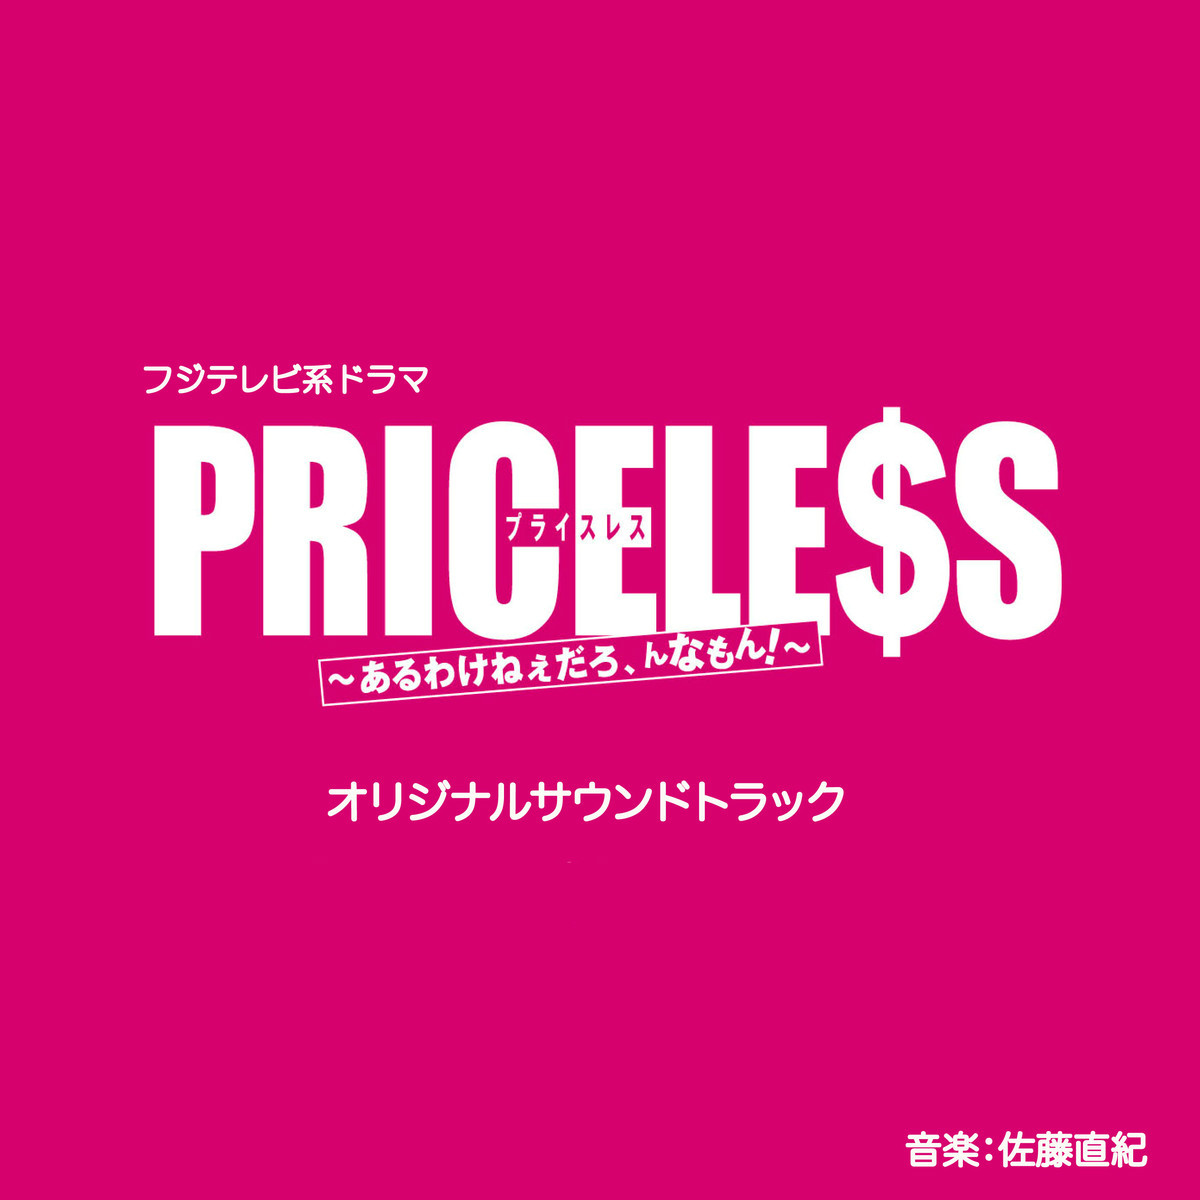 PRICELESS原聲音樂封面